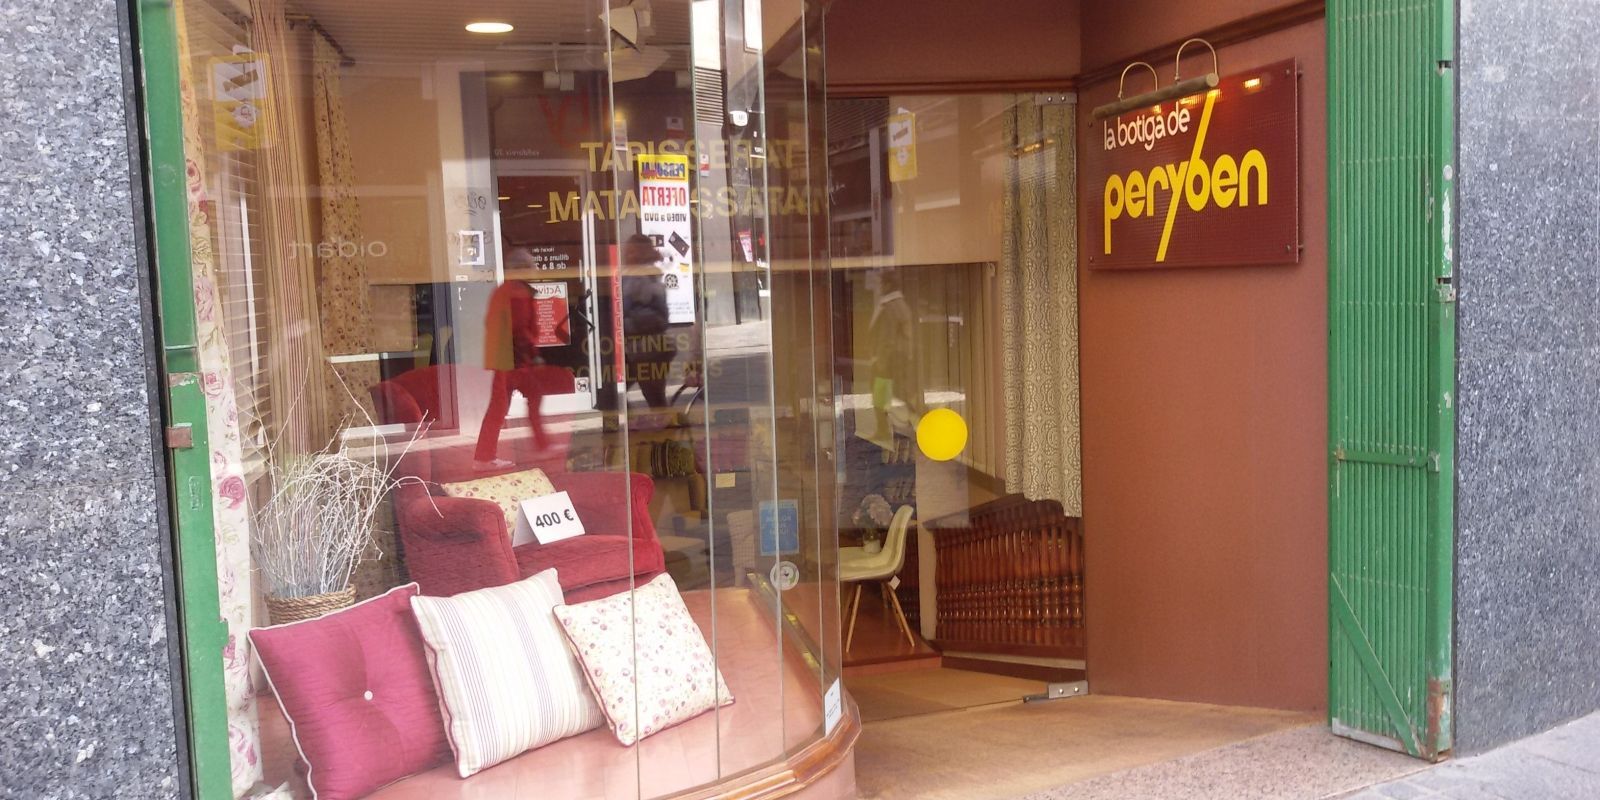 Peryben. Botiga referent a Sant Cugat del negoci de la tapisseria, va tancar per jubilació el 2018 després de 42 anys.